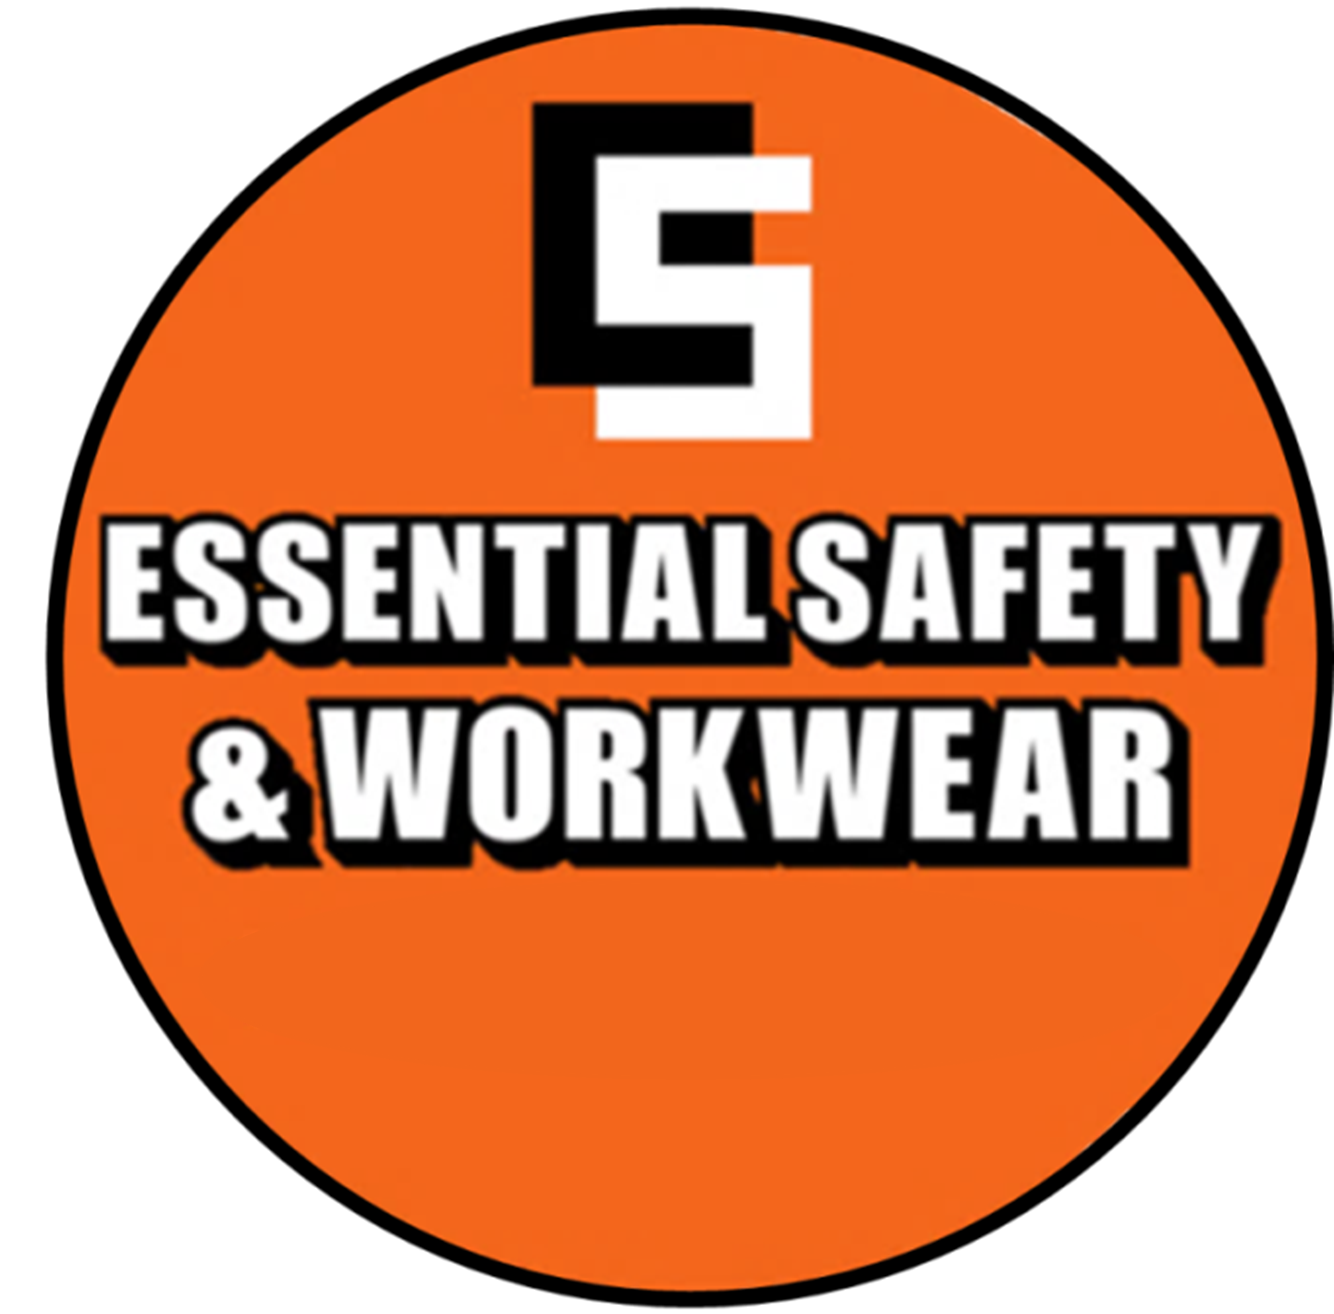 Essential Safety & Workwear